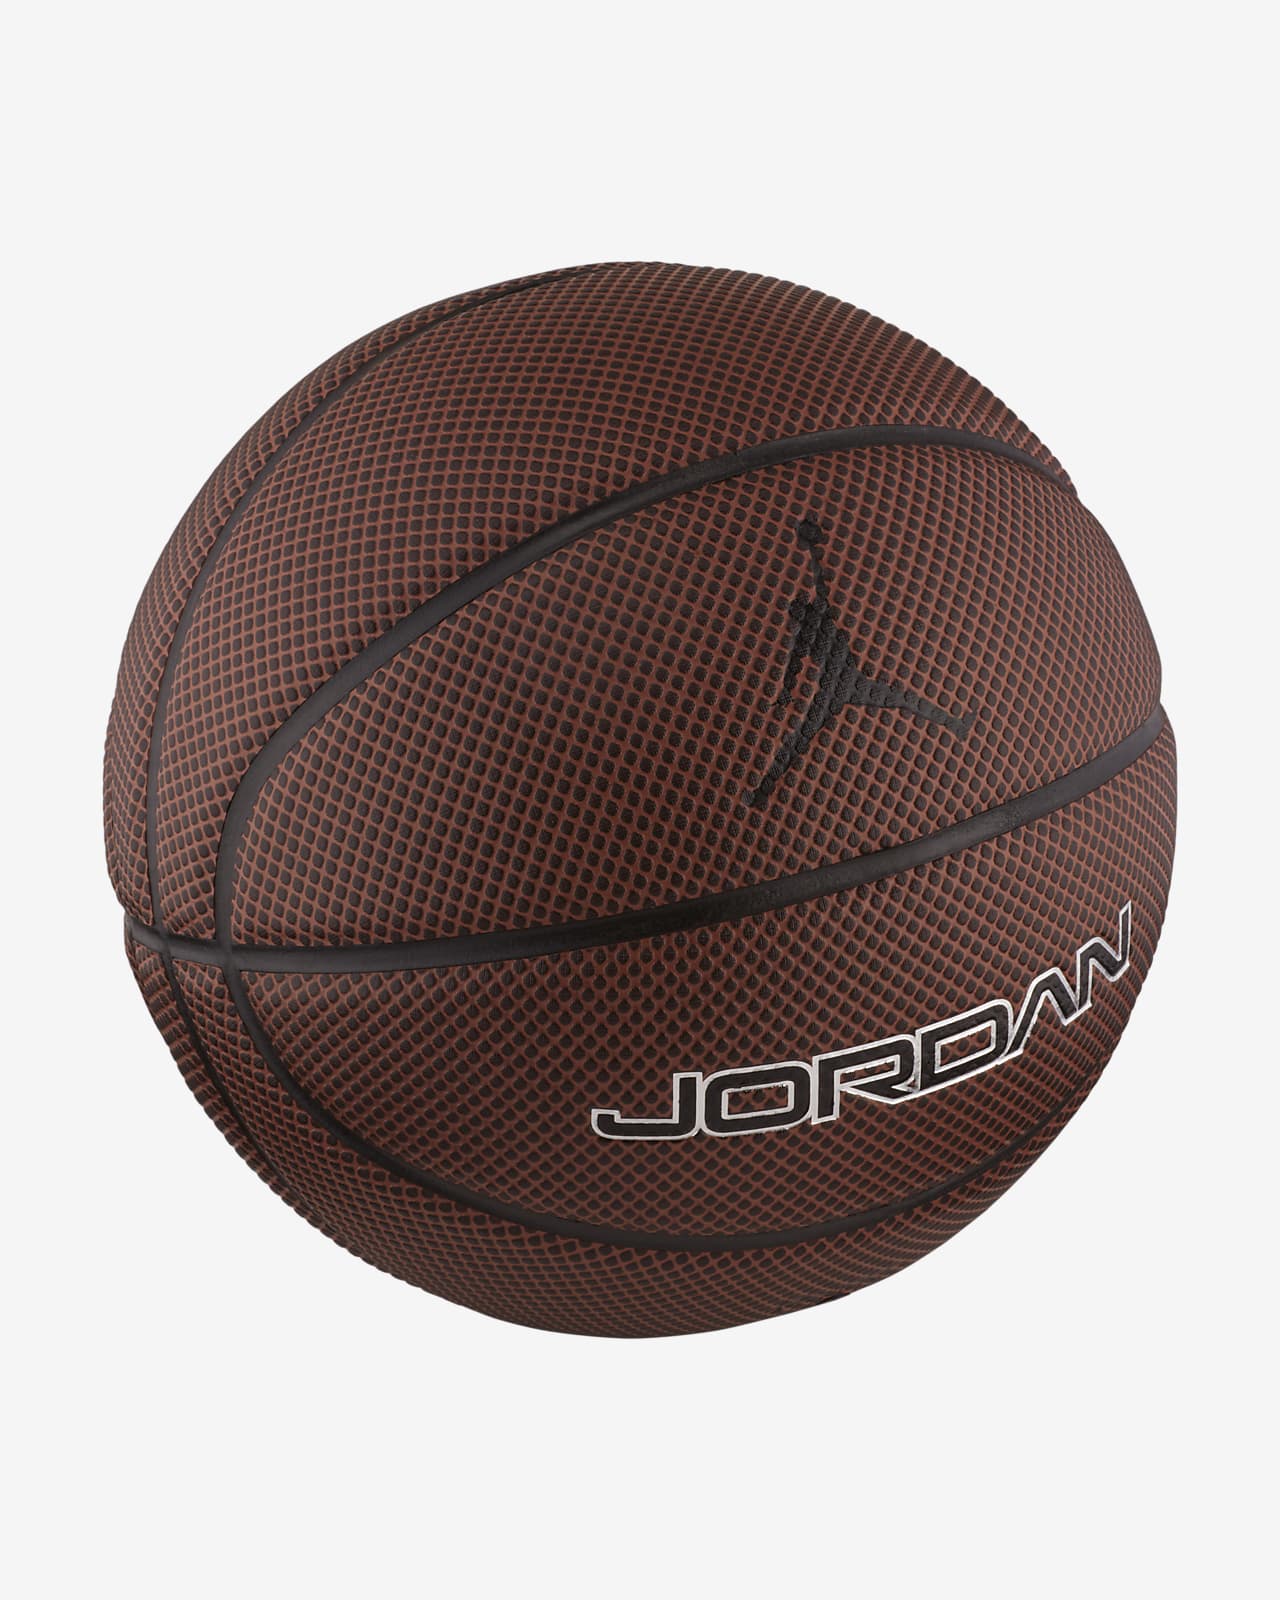 Jordan Legacy 8P (7 號) 籃球。Nike TW